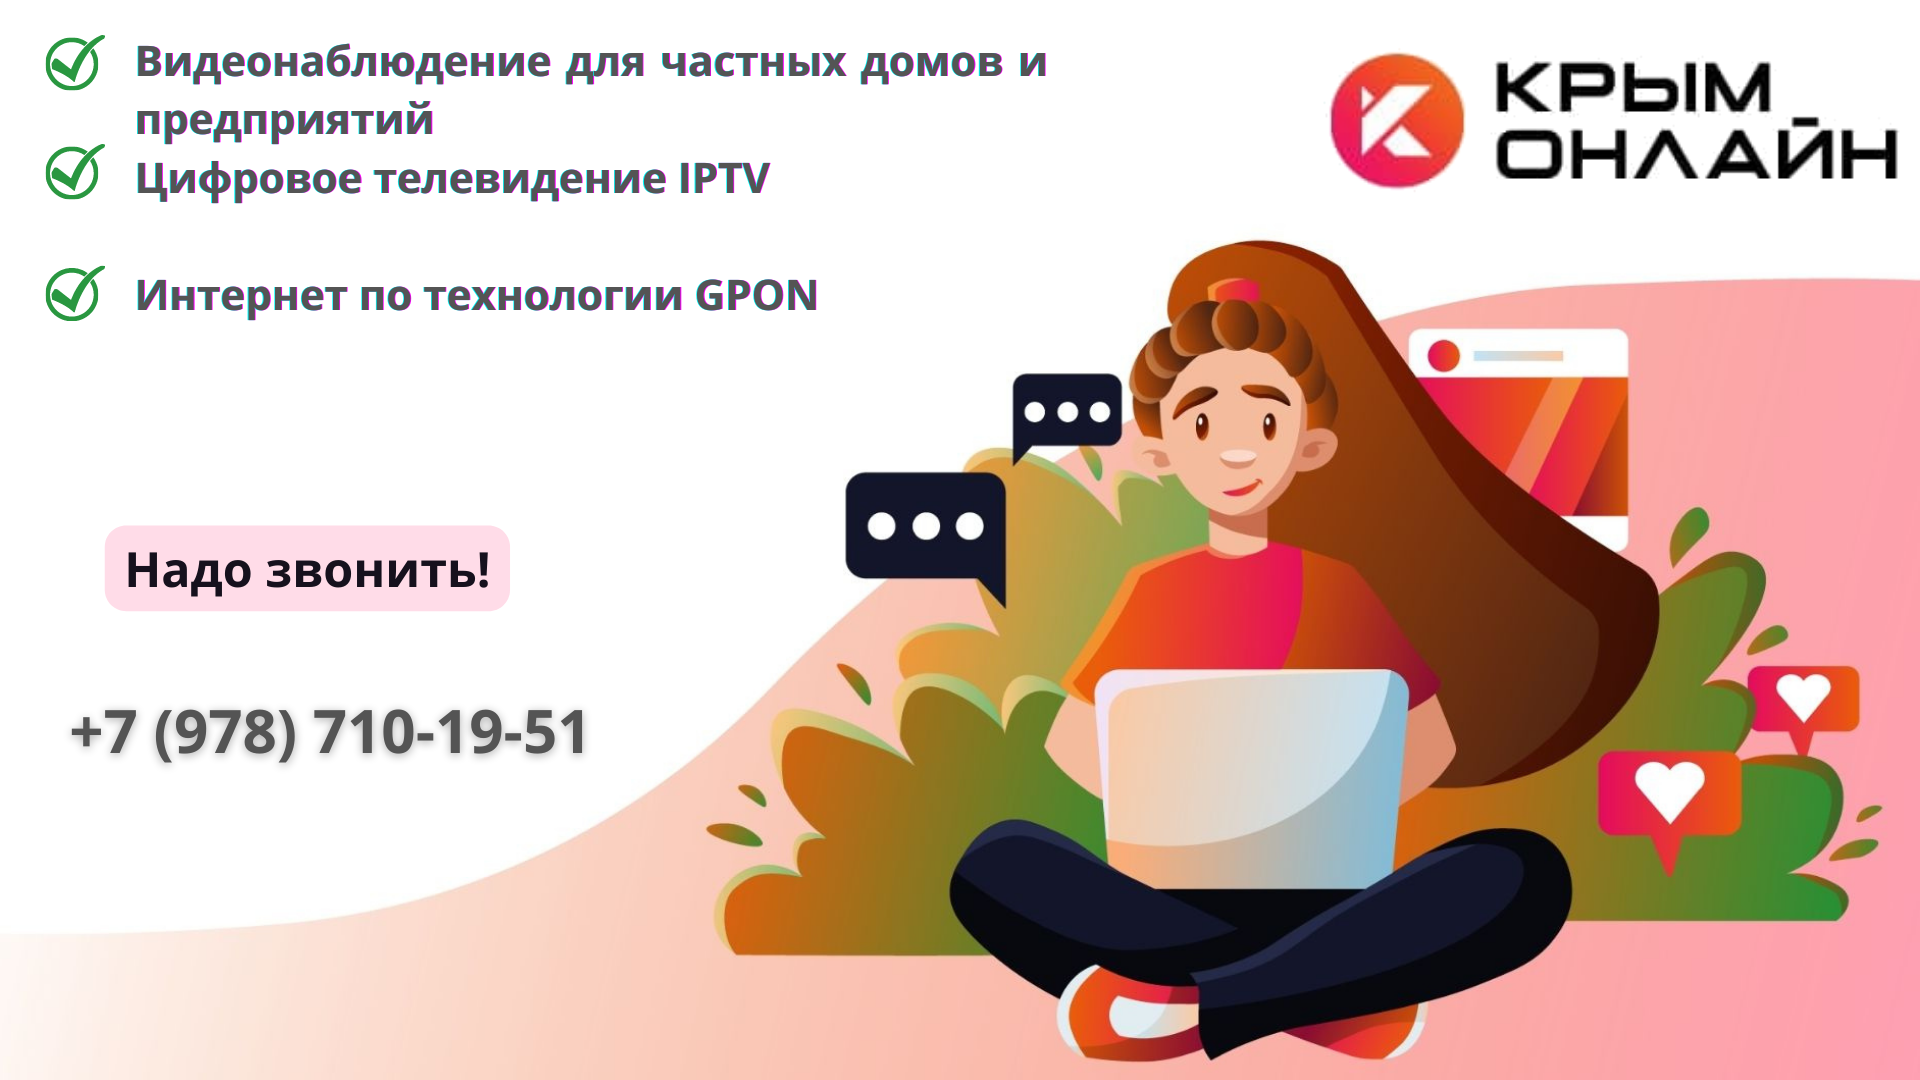 Крым Онлайн - один из ведущих провайдеров в Крыму.